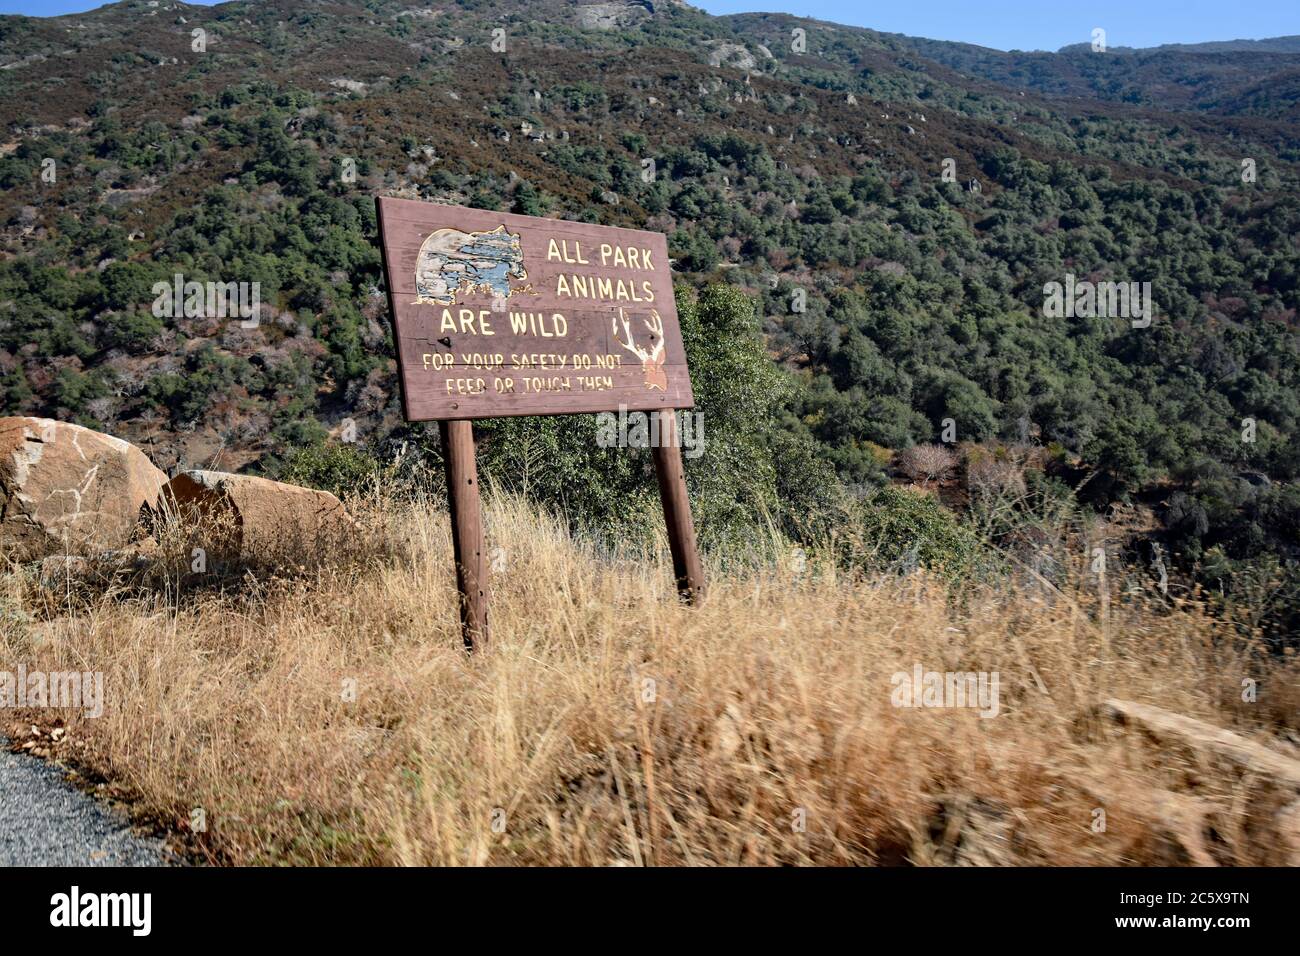 Un panneau en bois marron avec inscription jaune indiquant que tous les animaux du parc sont sauvages. Le long de la route sur la General Highway dans le parc national de Sequoia. Banque D'Images